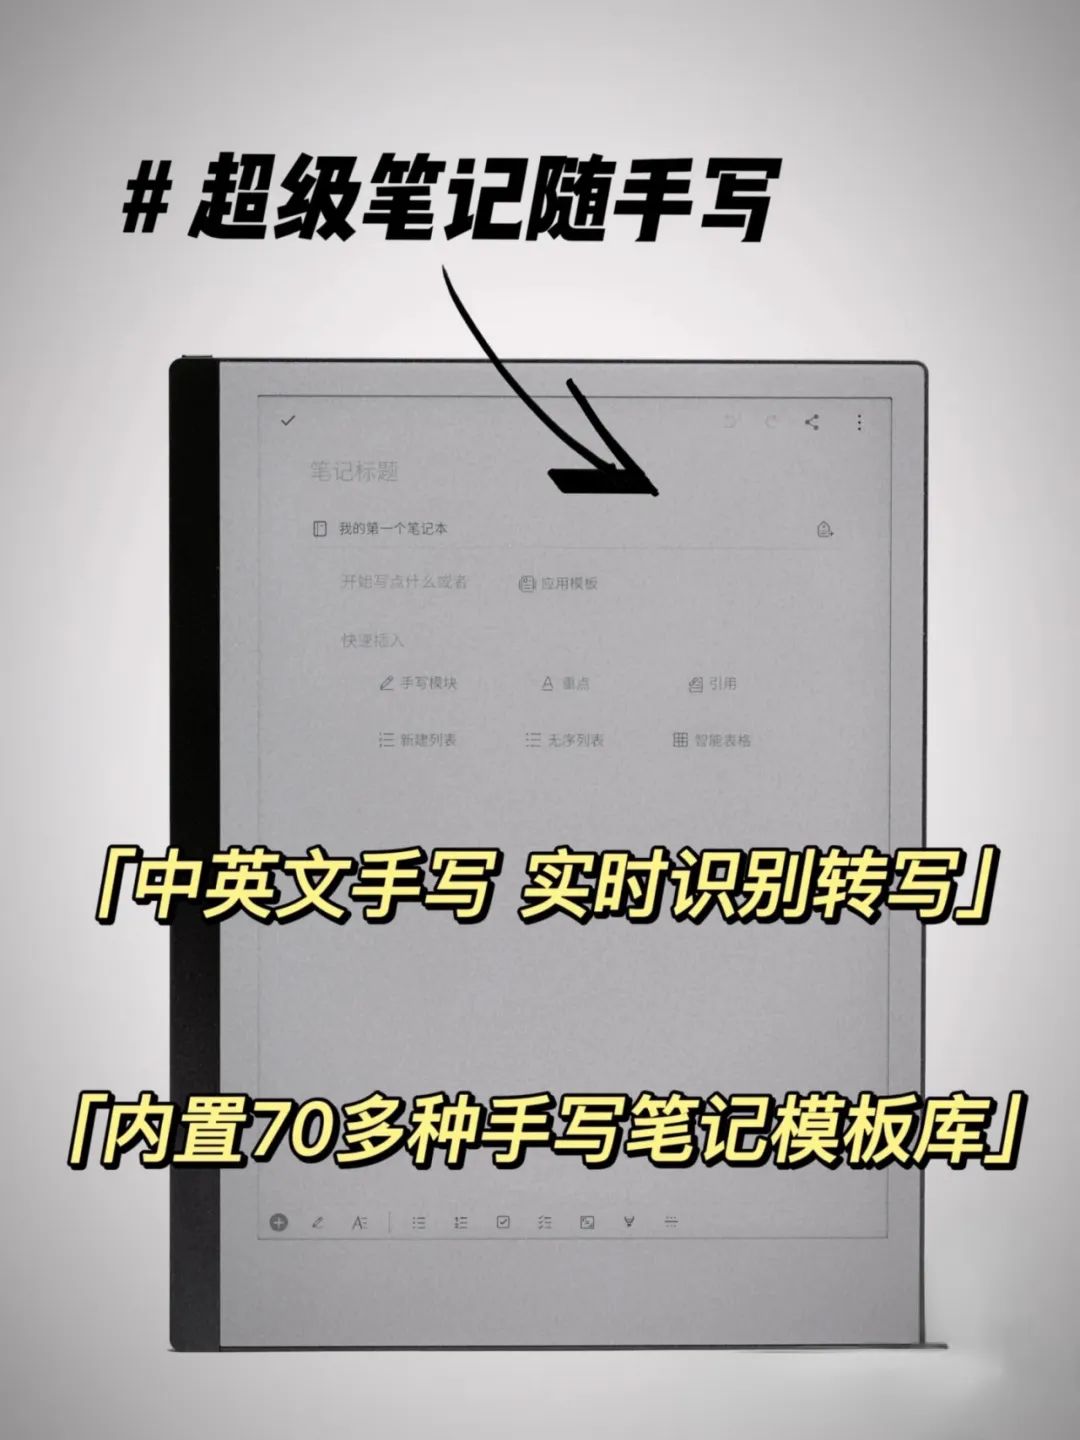 印象笔记本_印象中国 大理印象_印象笔记 加密单个笔记本